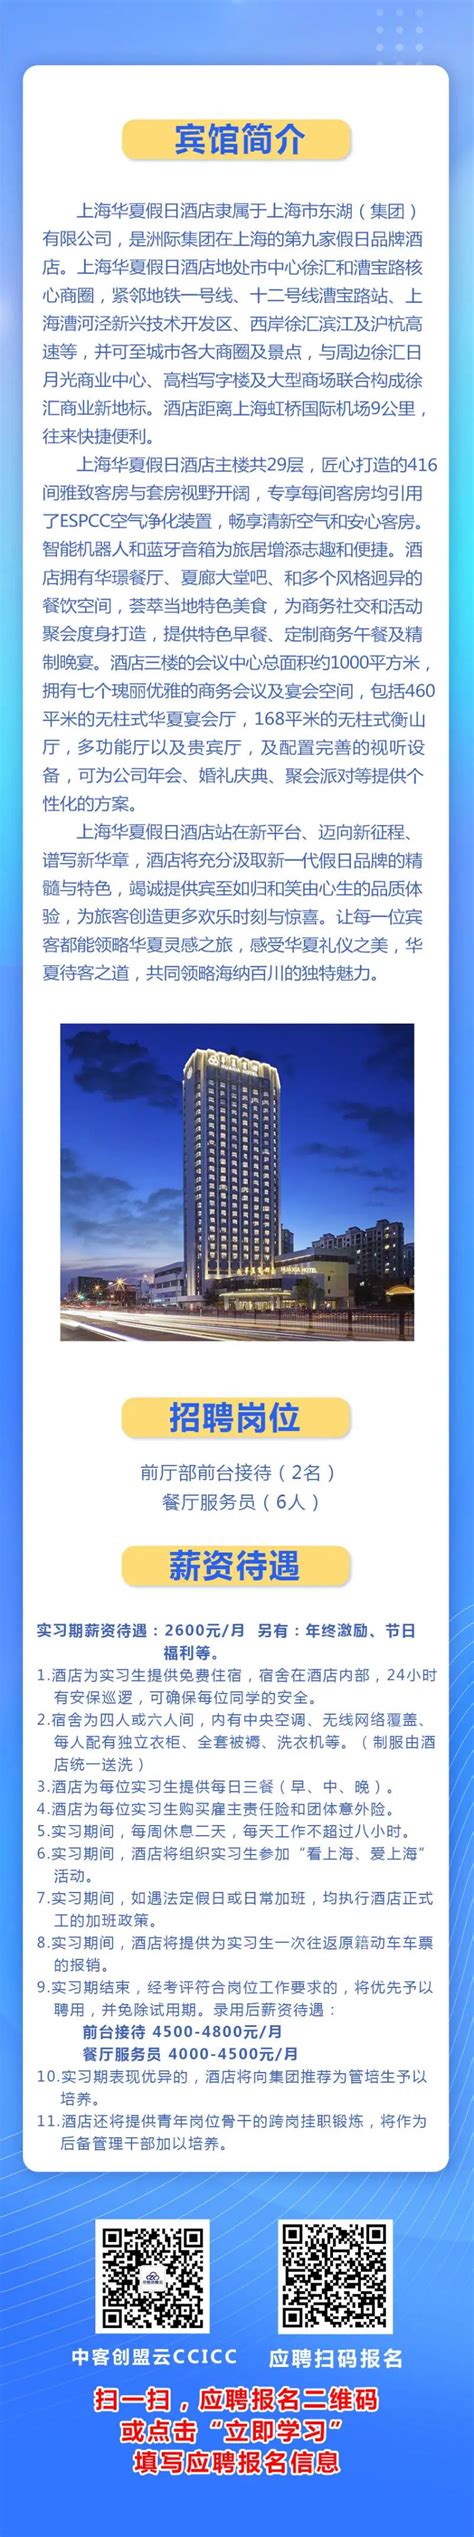 上海华夏假日酒店招聘-就业创业在线--新乡工程学院